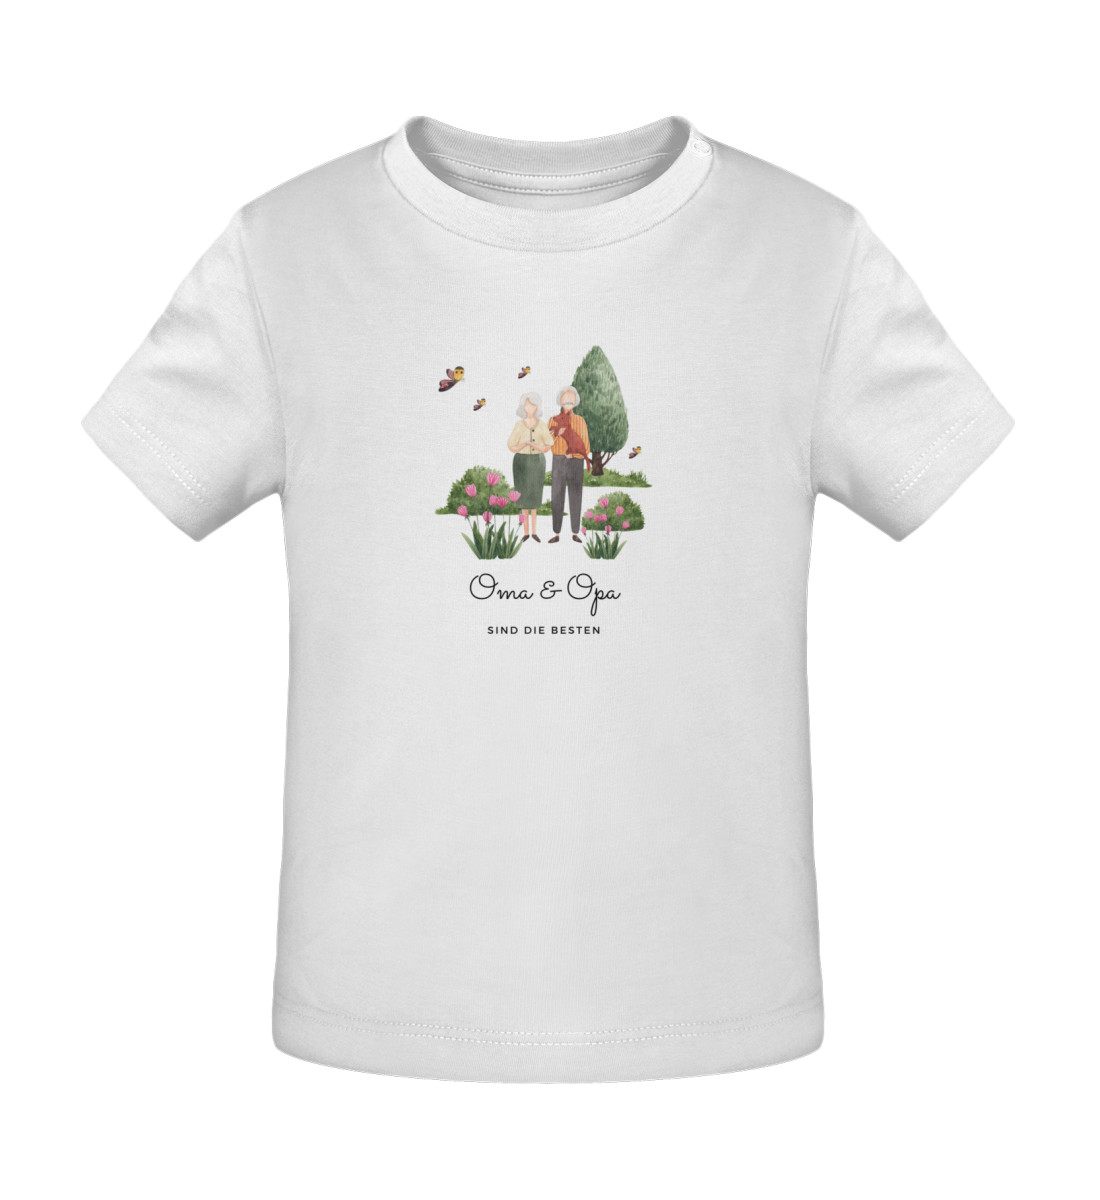 Oma & Opa sind die besten - Baby Creator T-Shirt ST/ST-3